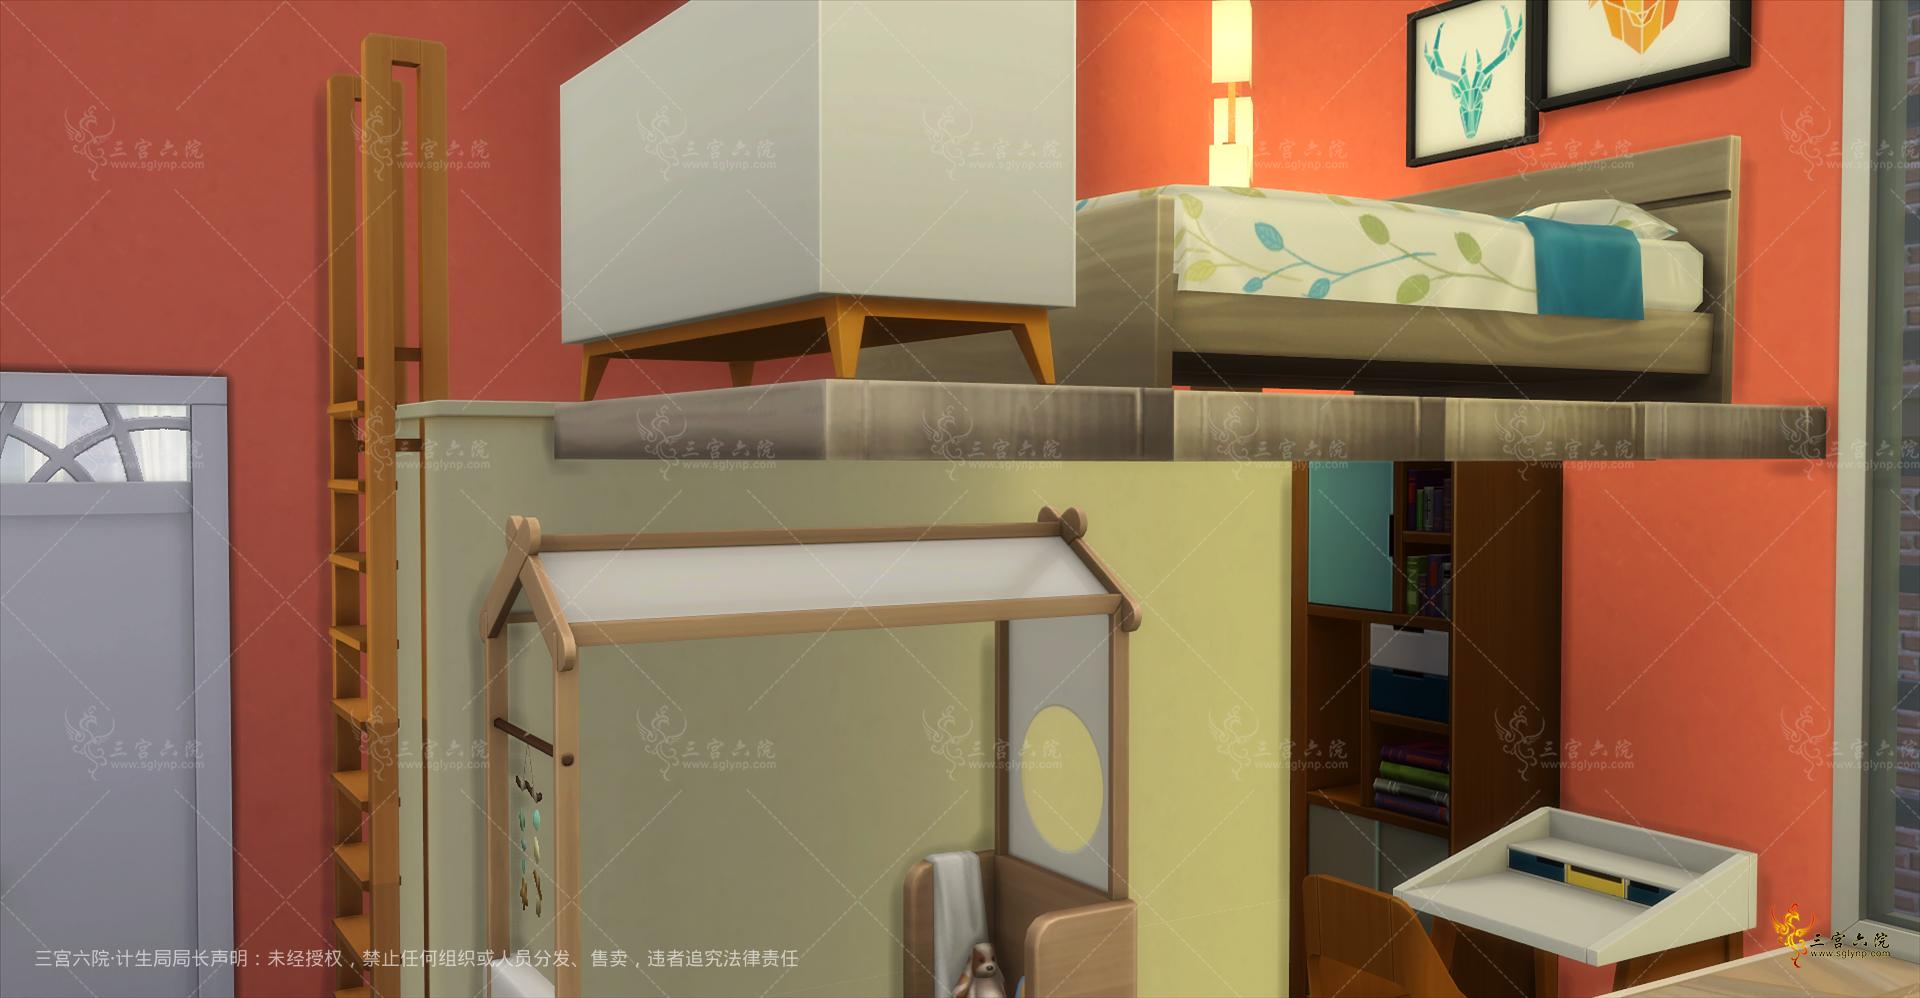 Sims 4 Screenshot 2021.08.23 - 09.07.21.91.png